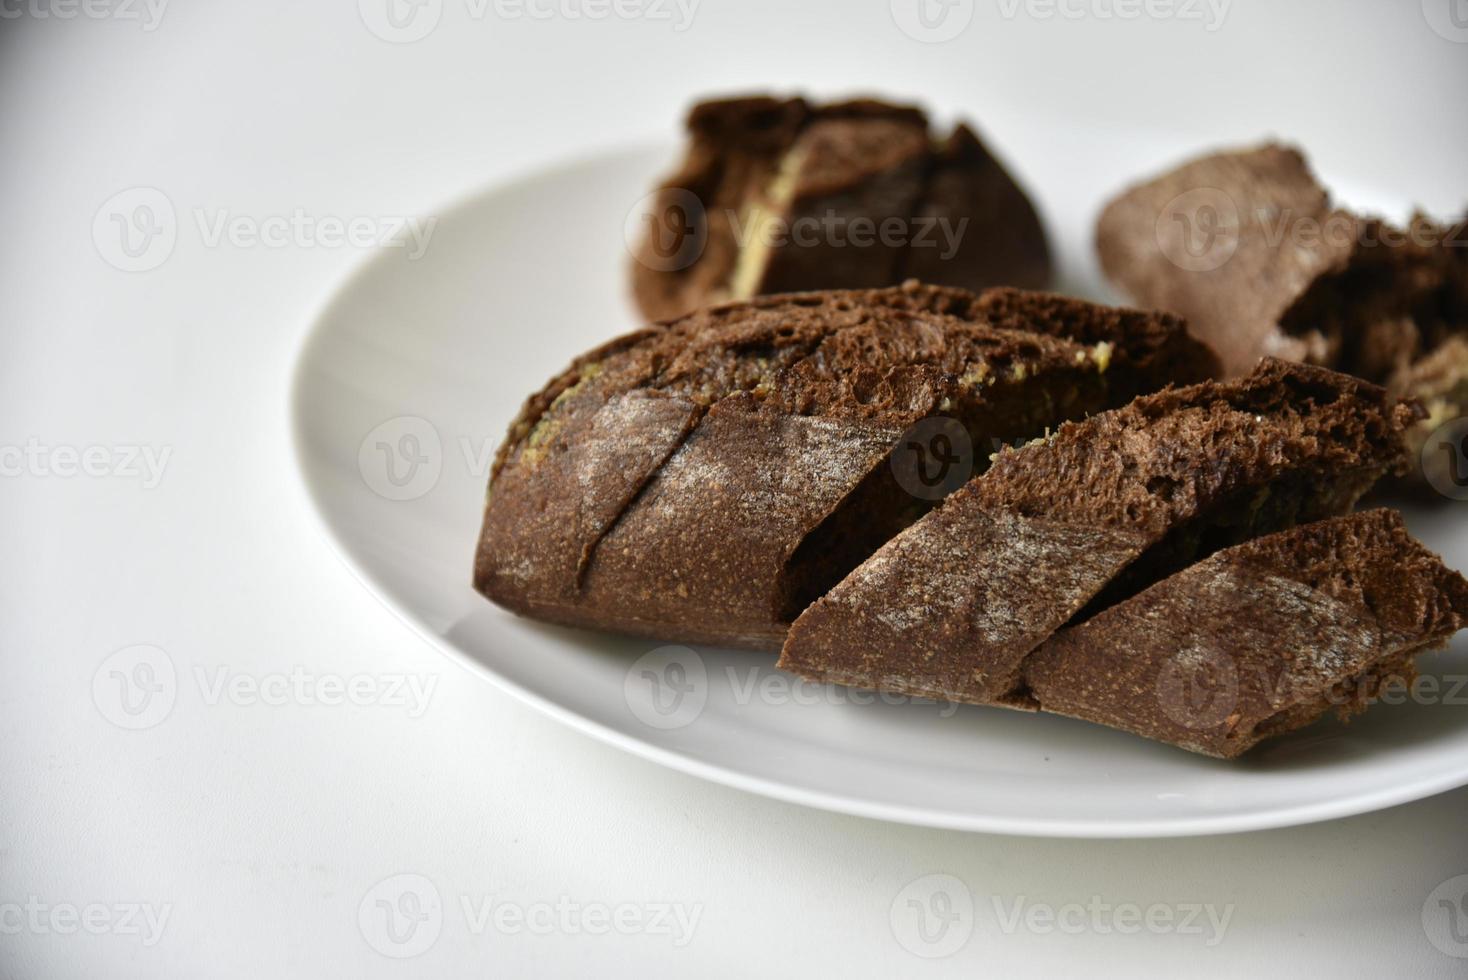 morceaux de pain noir sur une assiette blanche photo